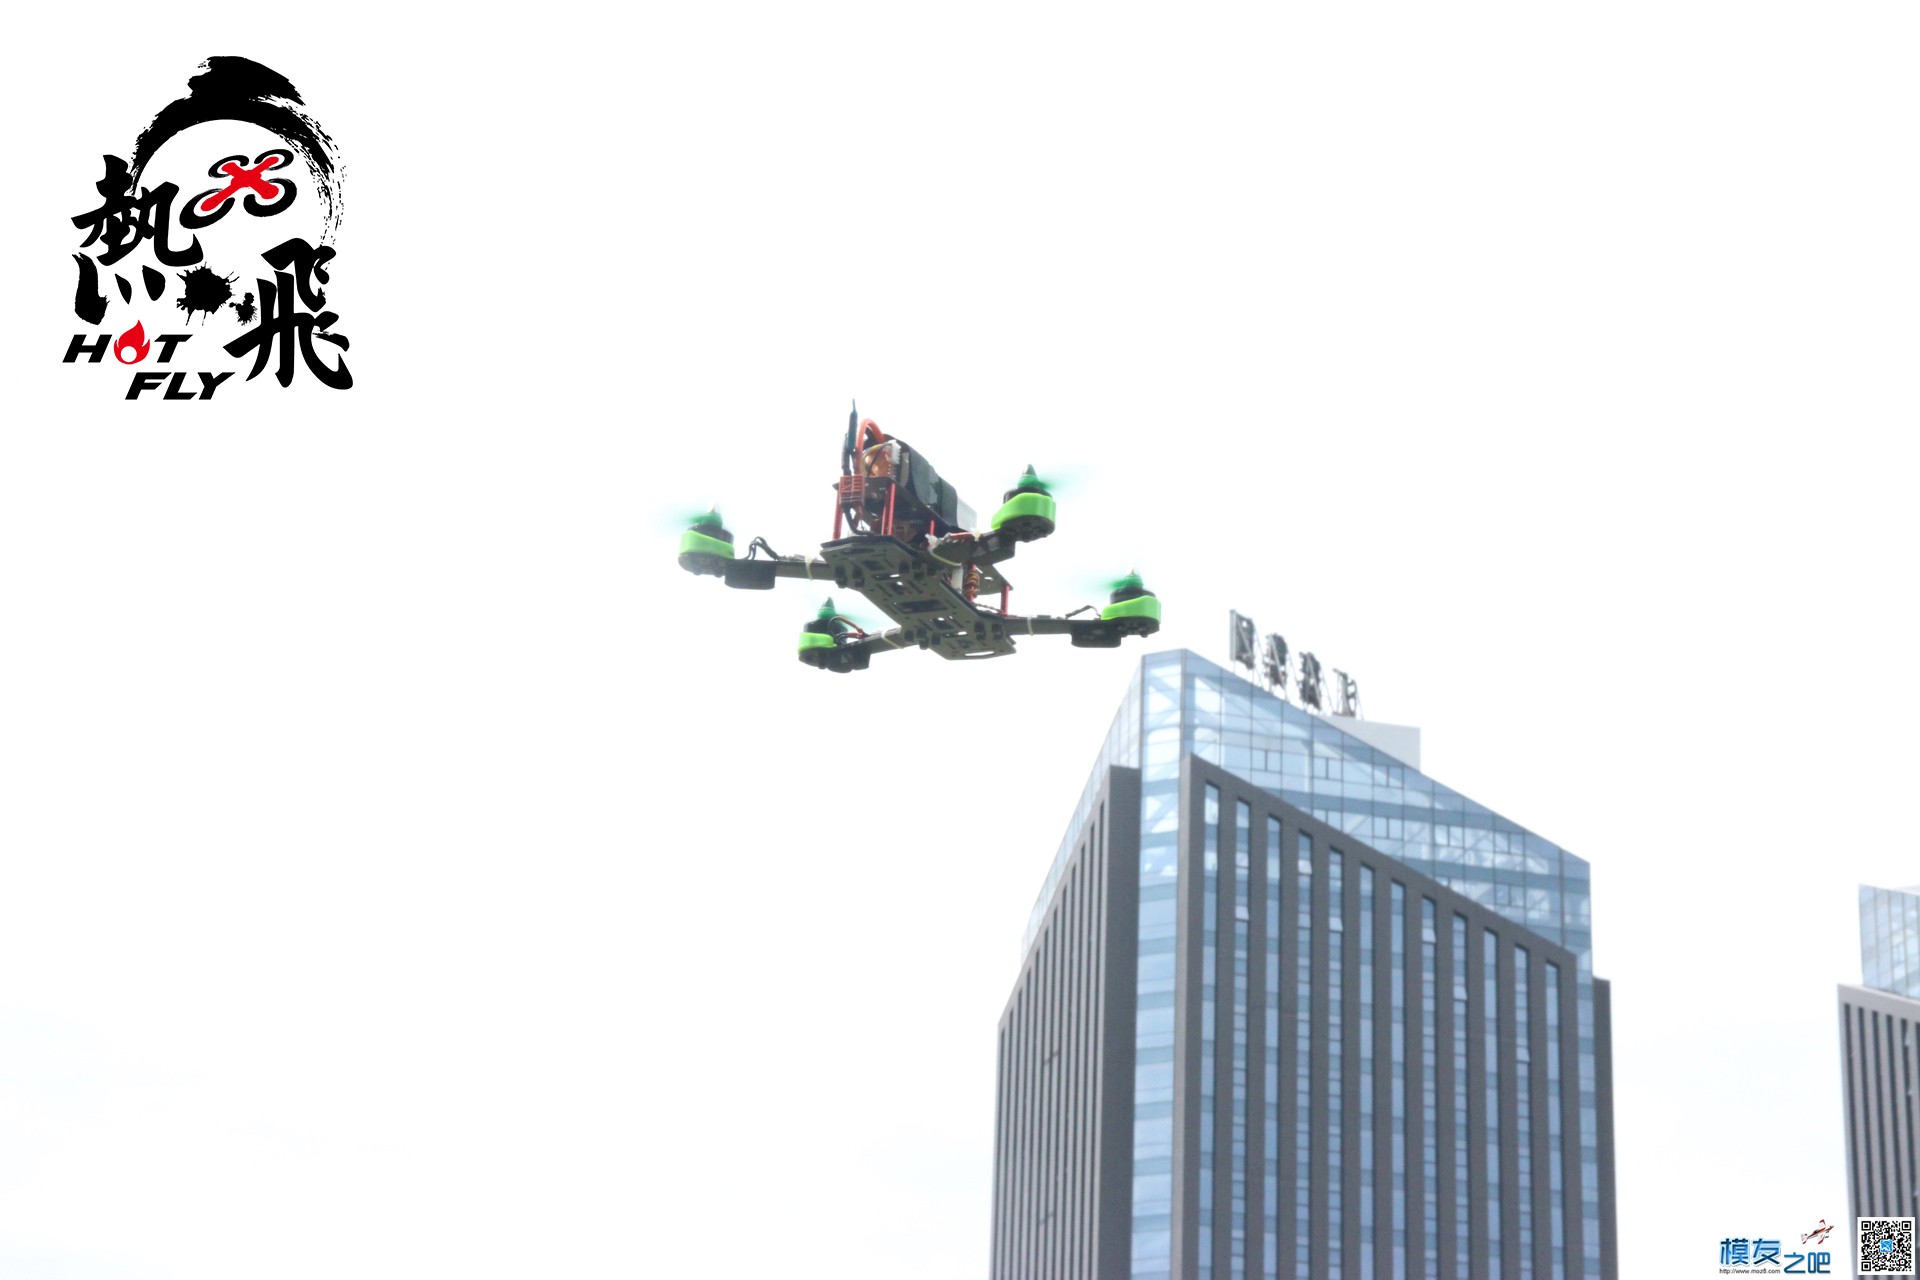 热飞视频+图片|7.9无人机总动员现场曝光各种最新机型 无人机 作者:杭州大碗 1166 